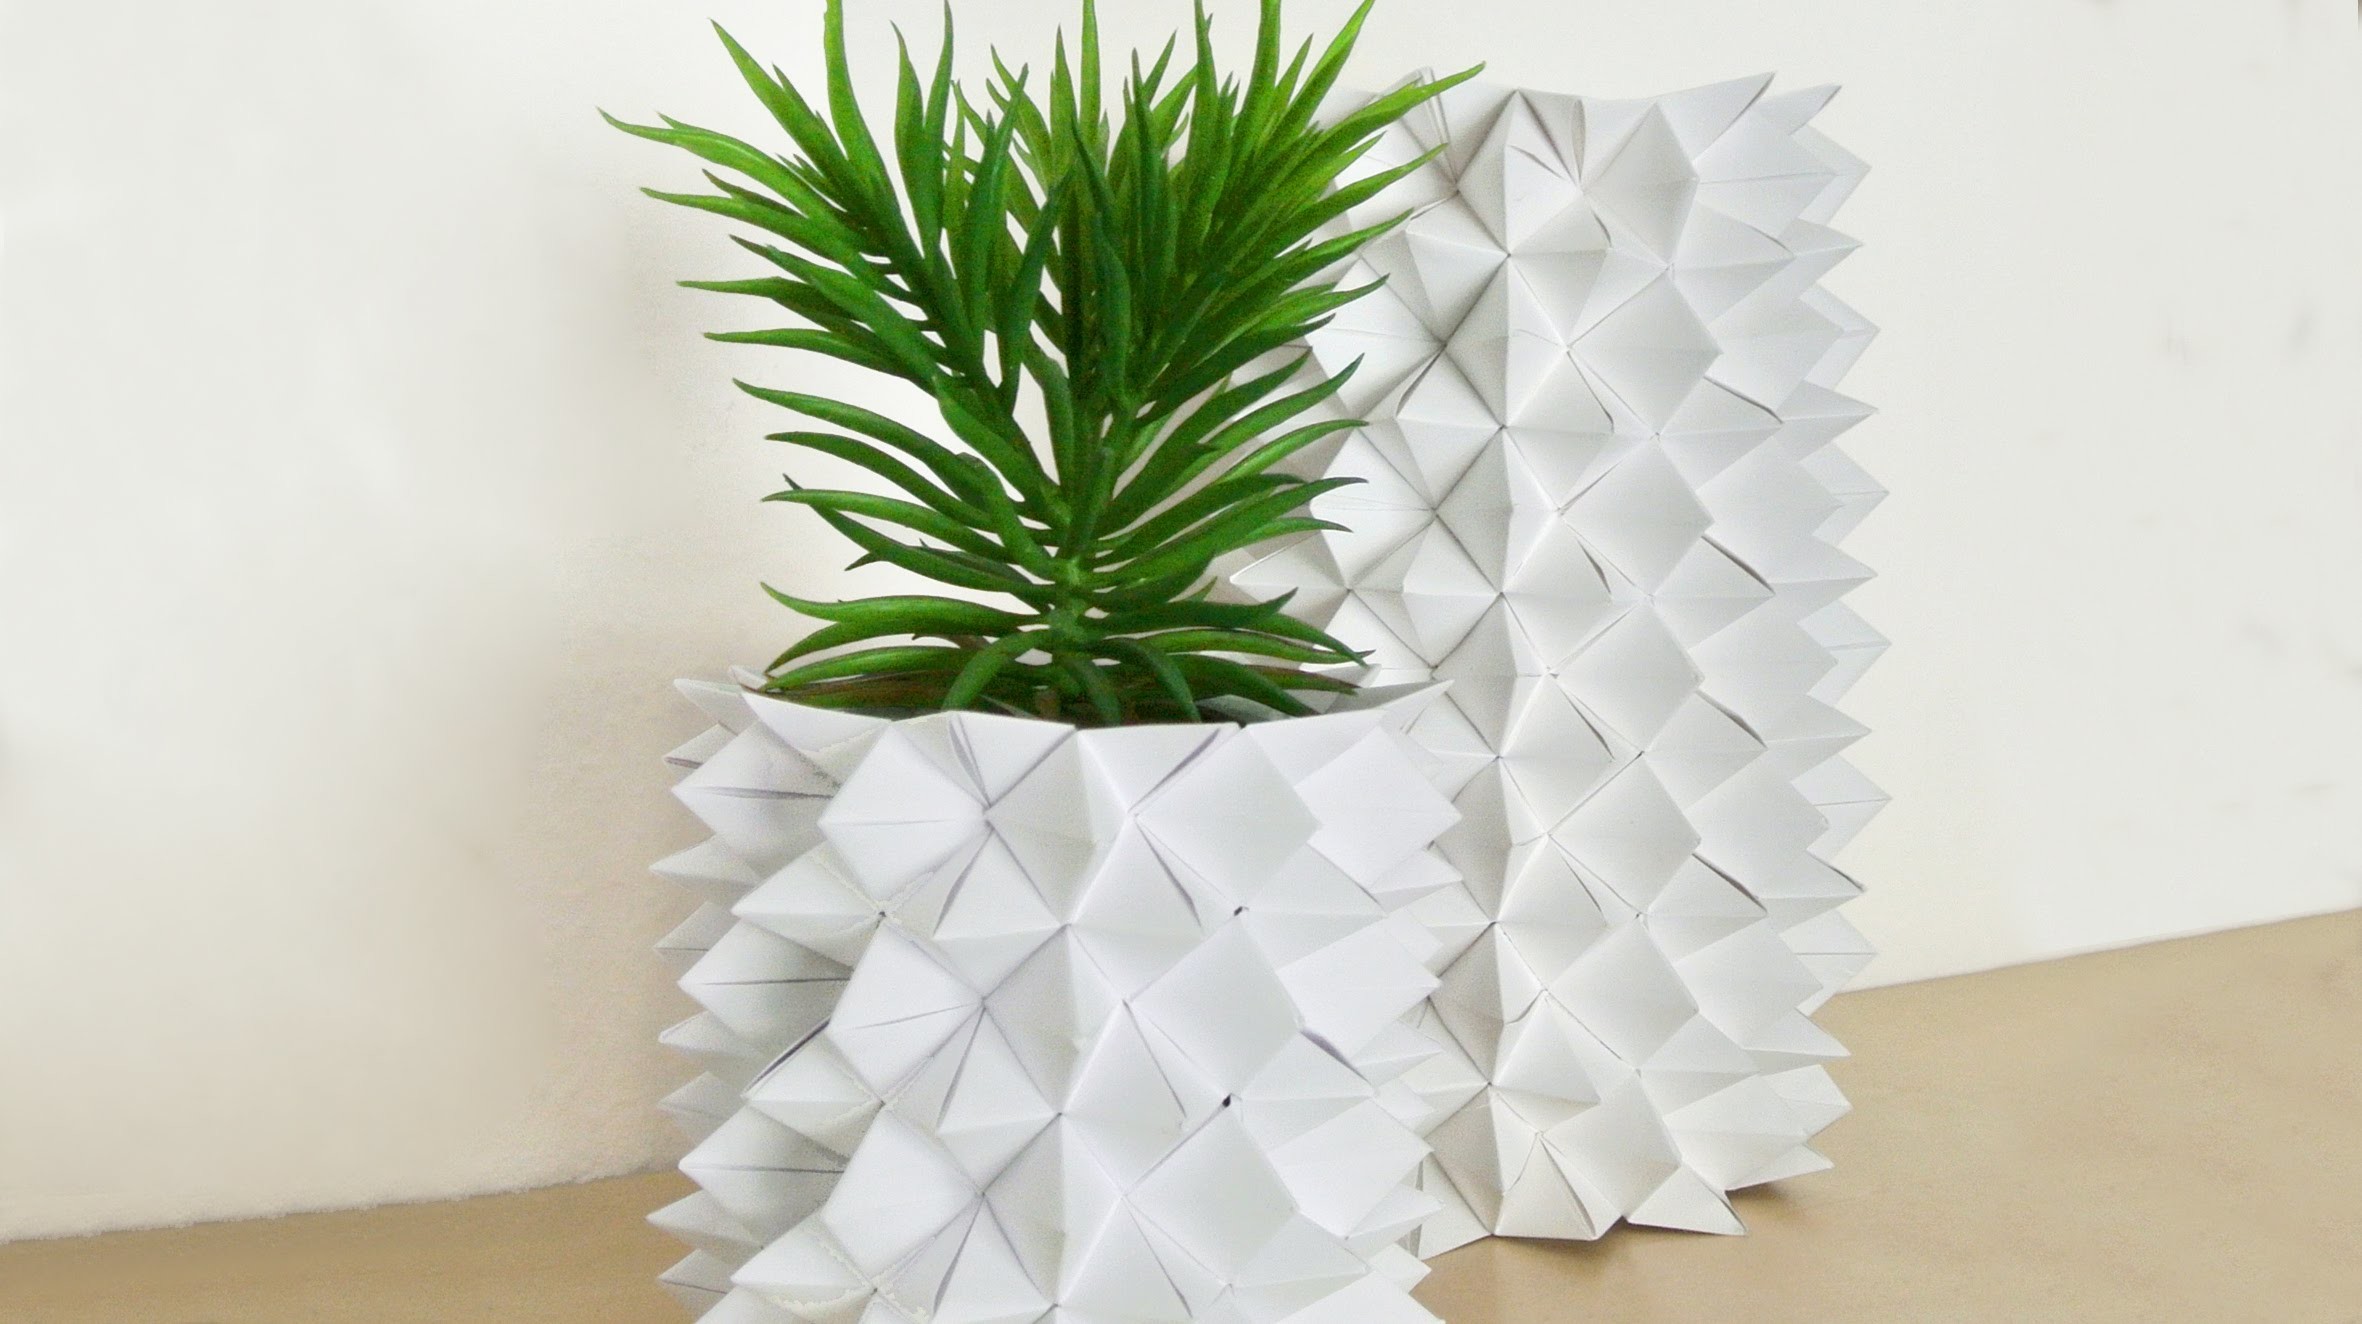 DIY Origami Vase, Himmel& Hölle Vase, Fortune Teller Vase